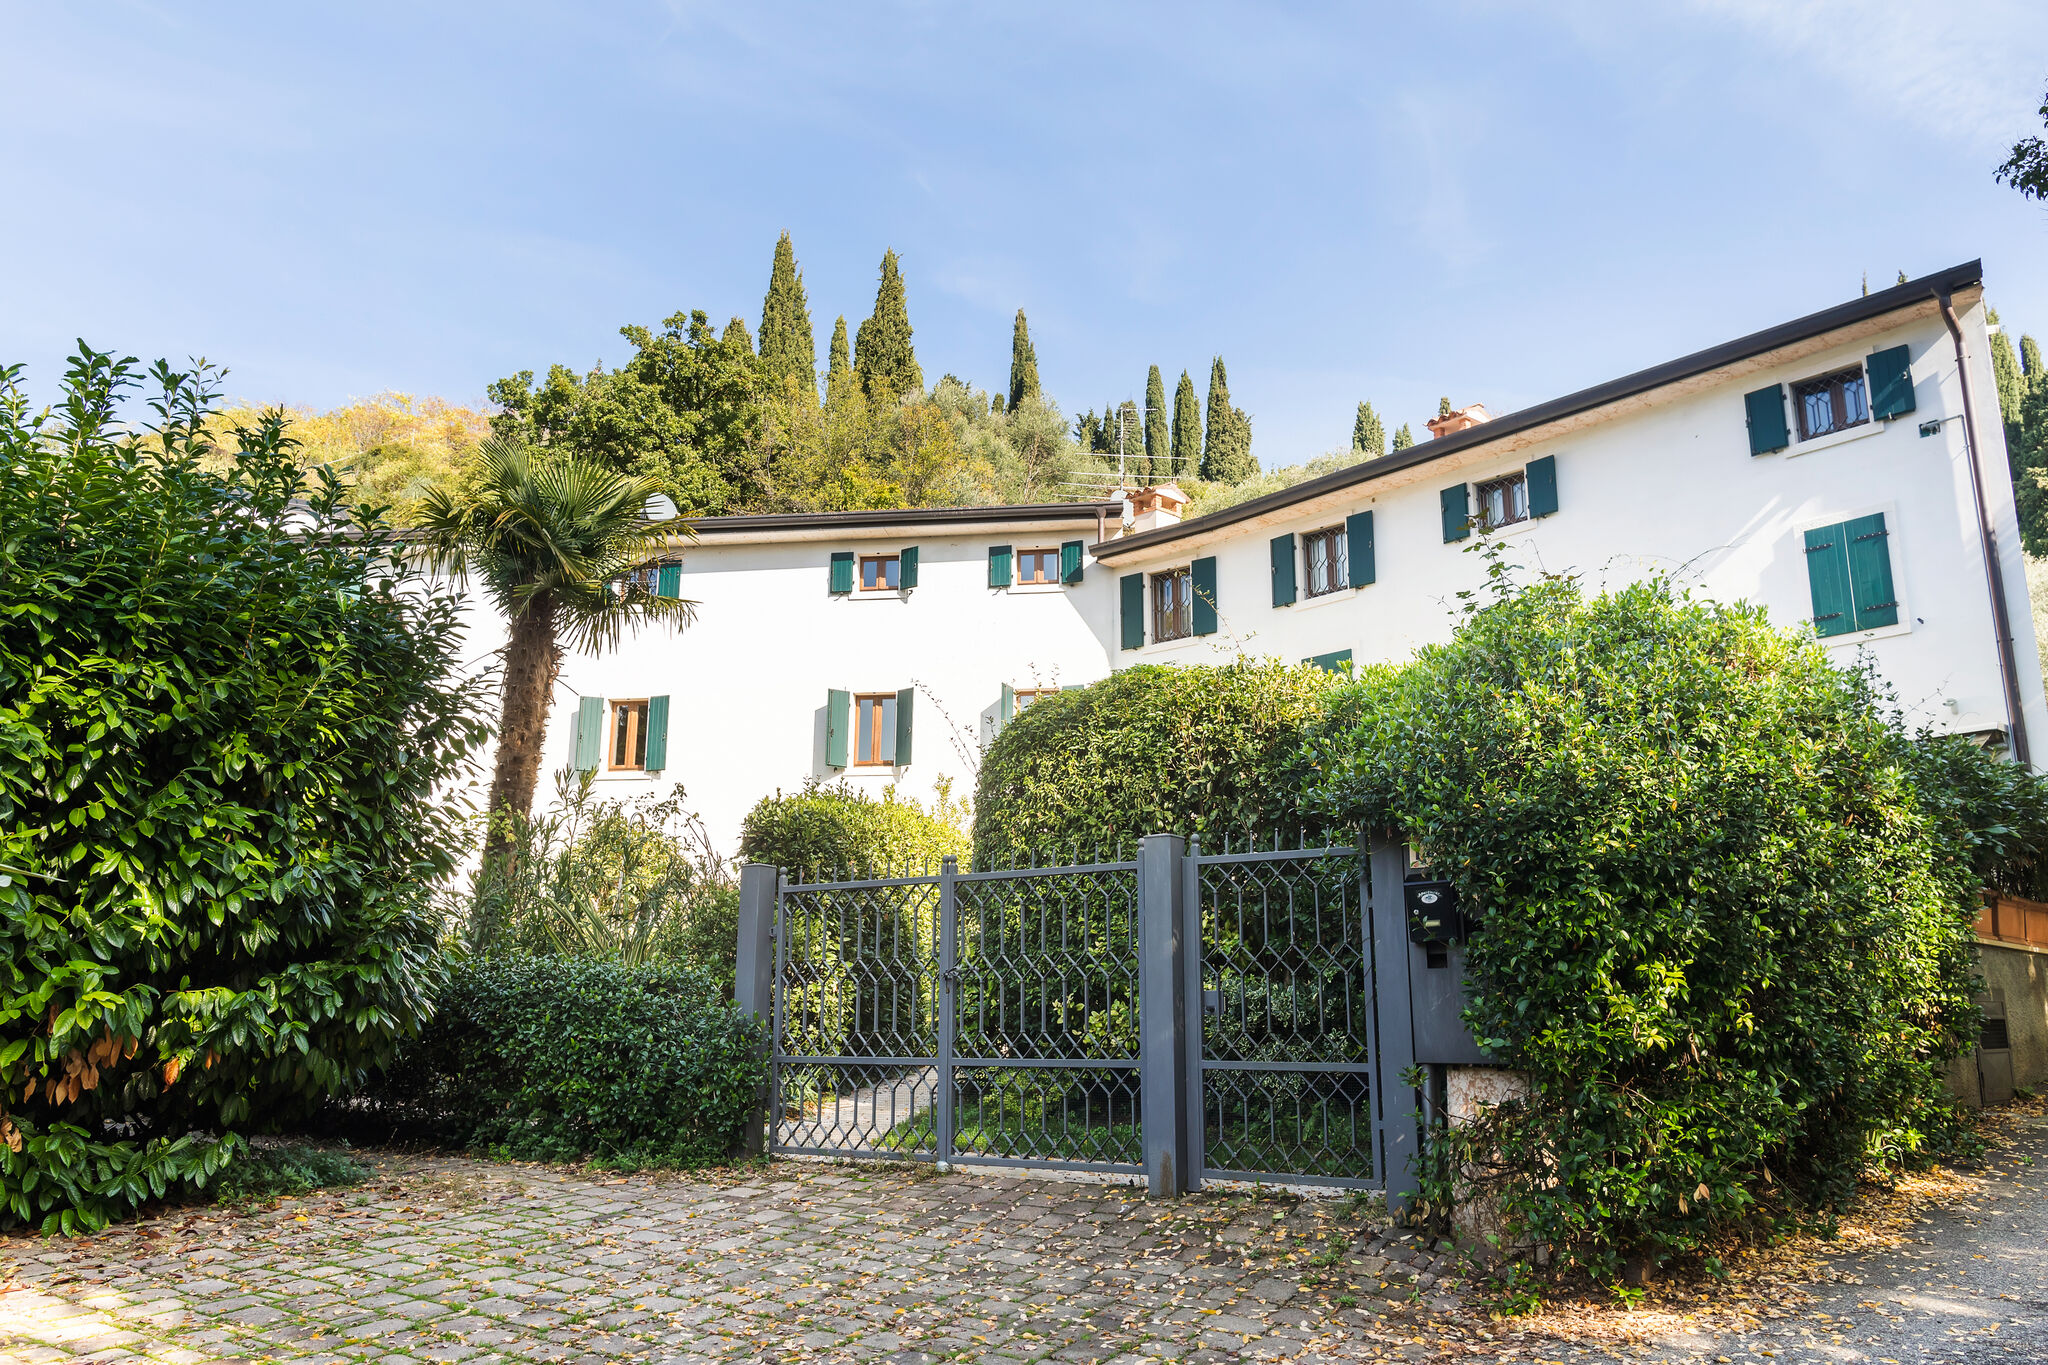 Aantrekkelijk landhuis in Caprino Veronese bij het Gardameer